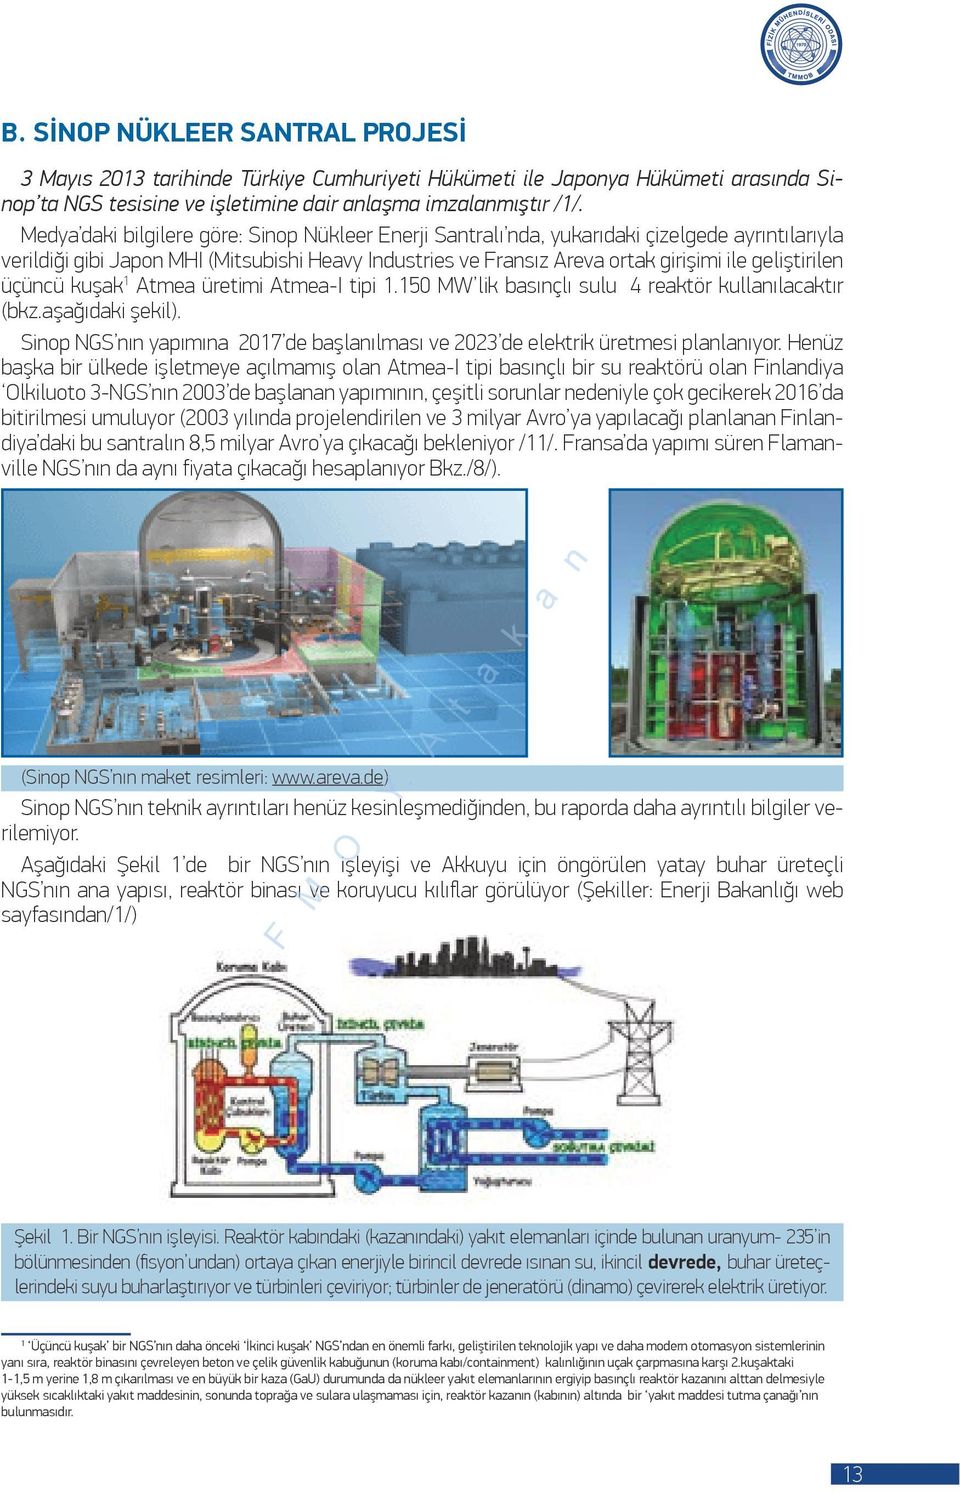 geliştirilen üçüncü kuşak 1 Atmea üretimi Atmea-I tipi 1.150 MW lik basınçlı sulu 4 reaktör kullanılacaktır (bkz.aşağıdaki şekil).